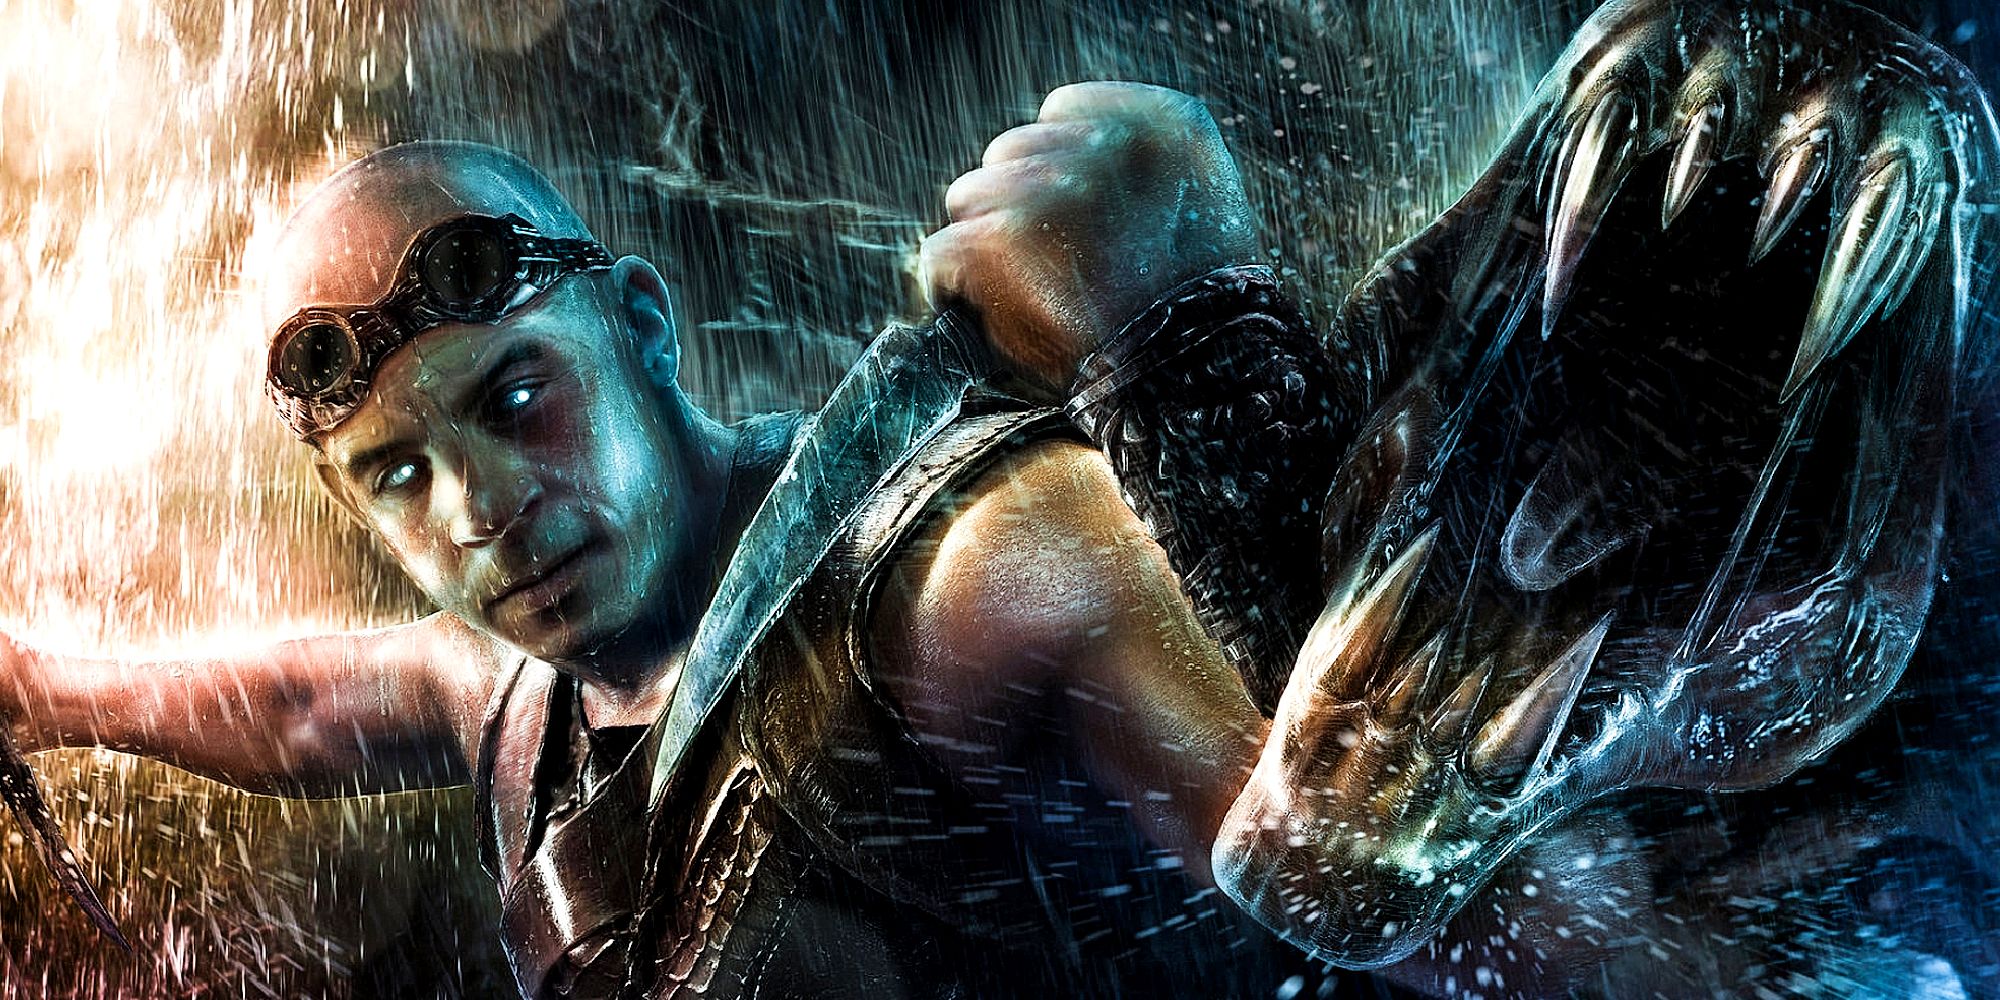 Vin Diesel in Chronicles of Riddick Art